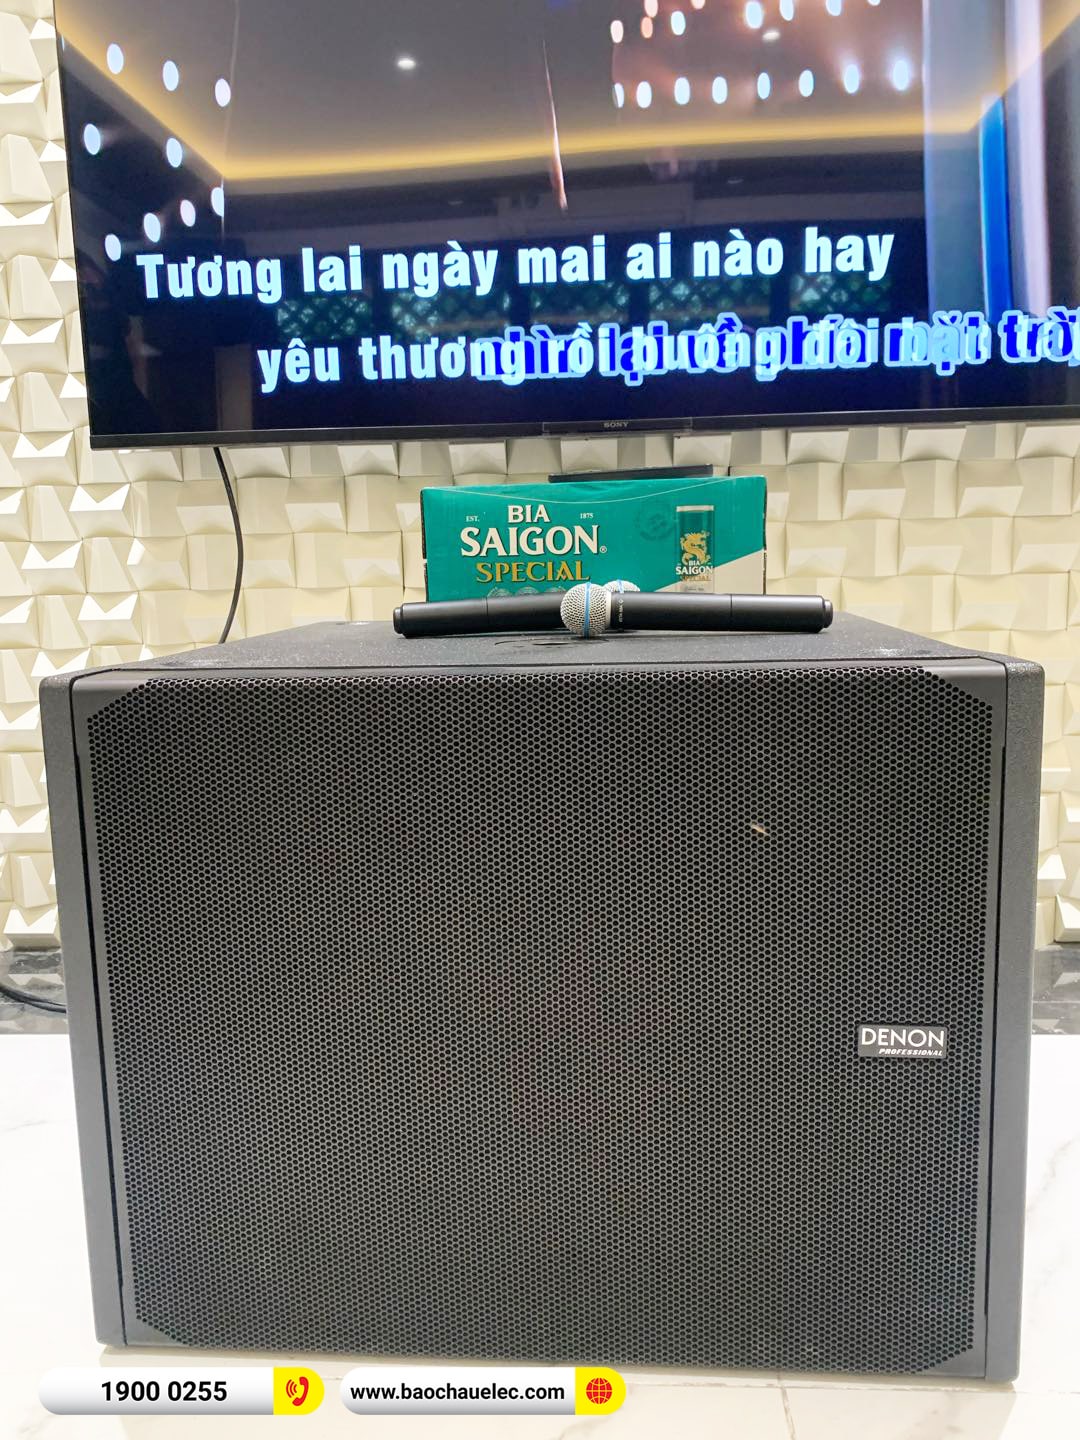 Lắp đặt dàn karaoke Denon hơn 188tr cho anh Trí tại Hà Nội